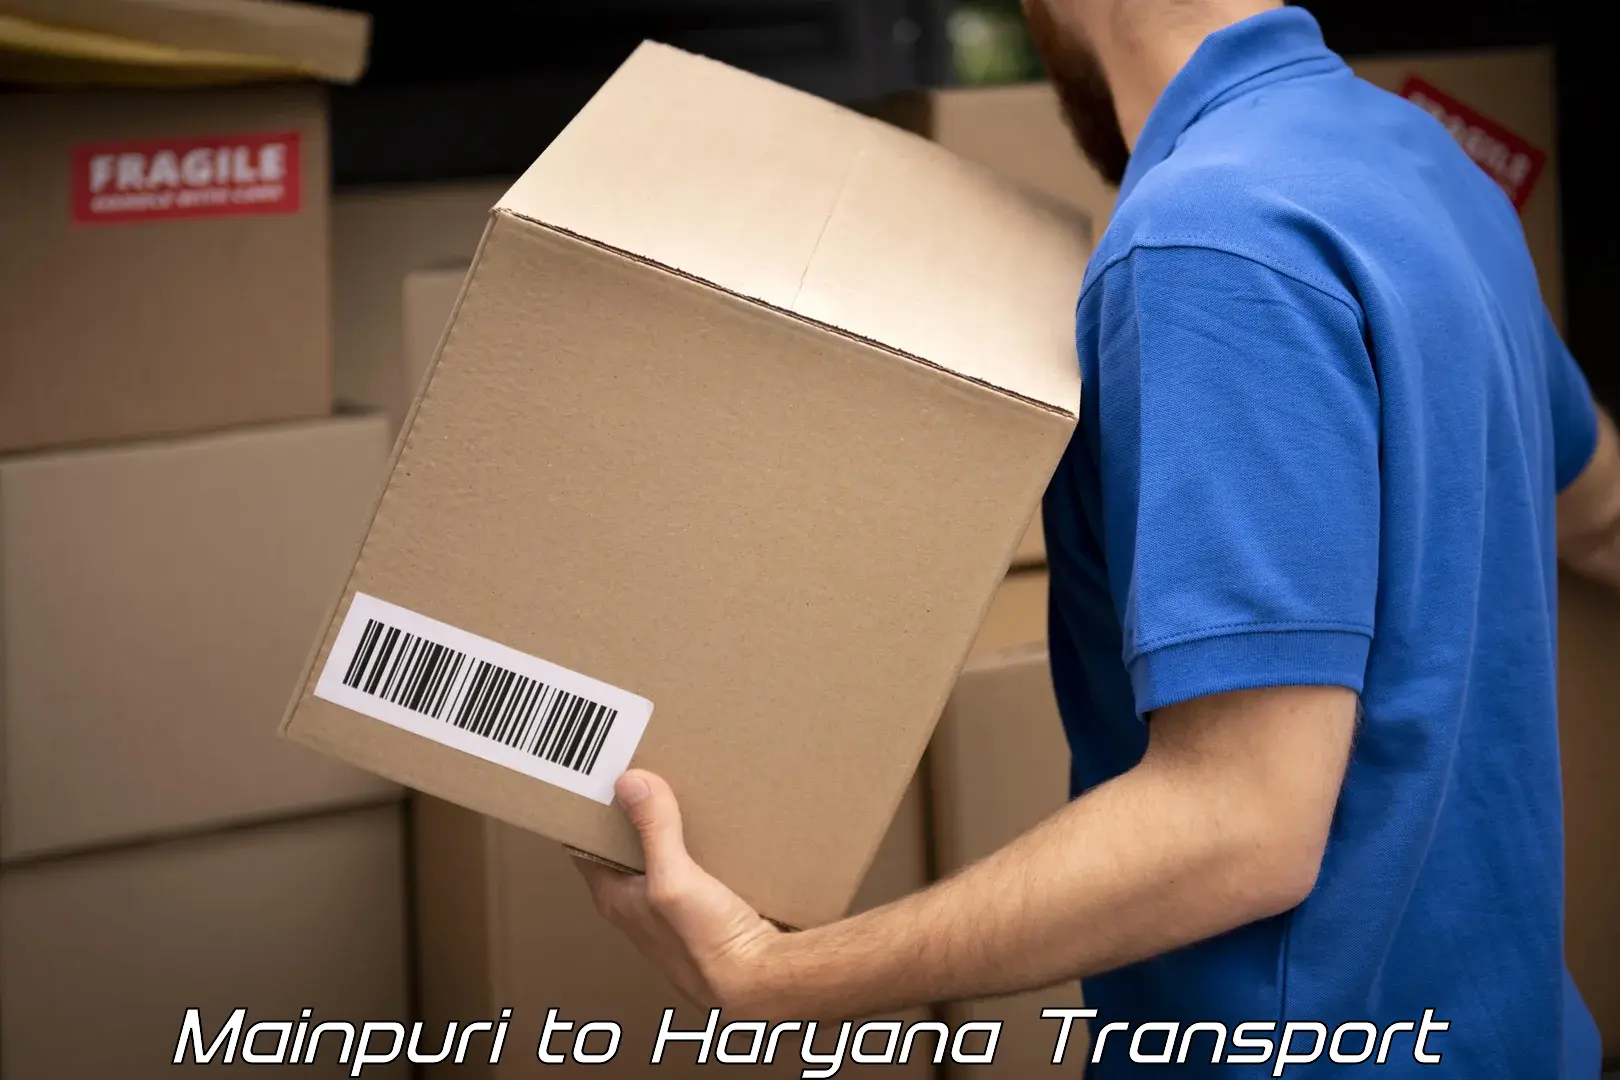 Transport in sharing Mainpuri to Sohna